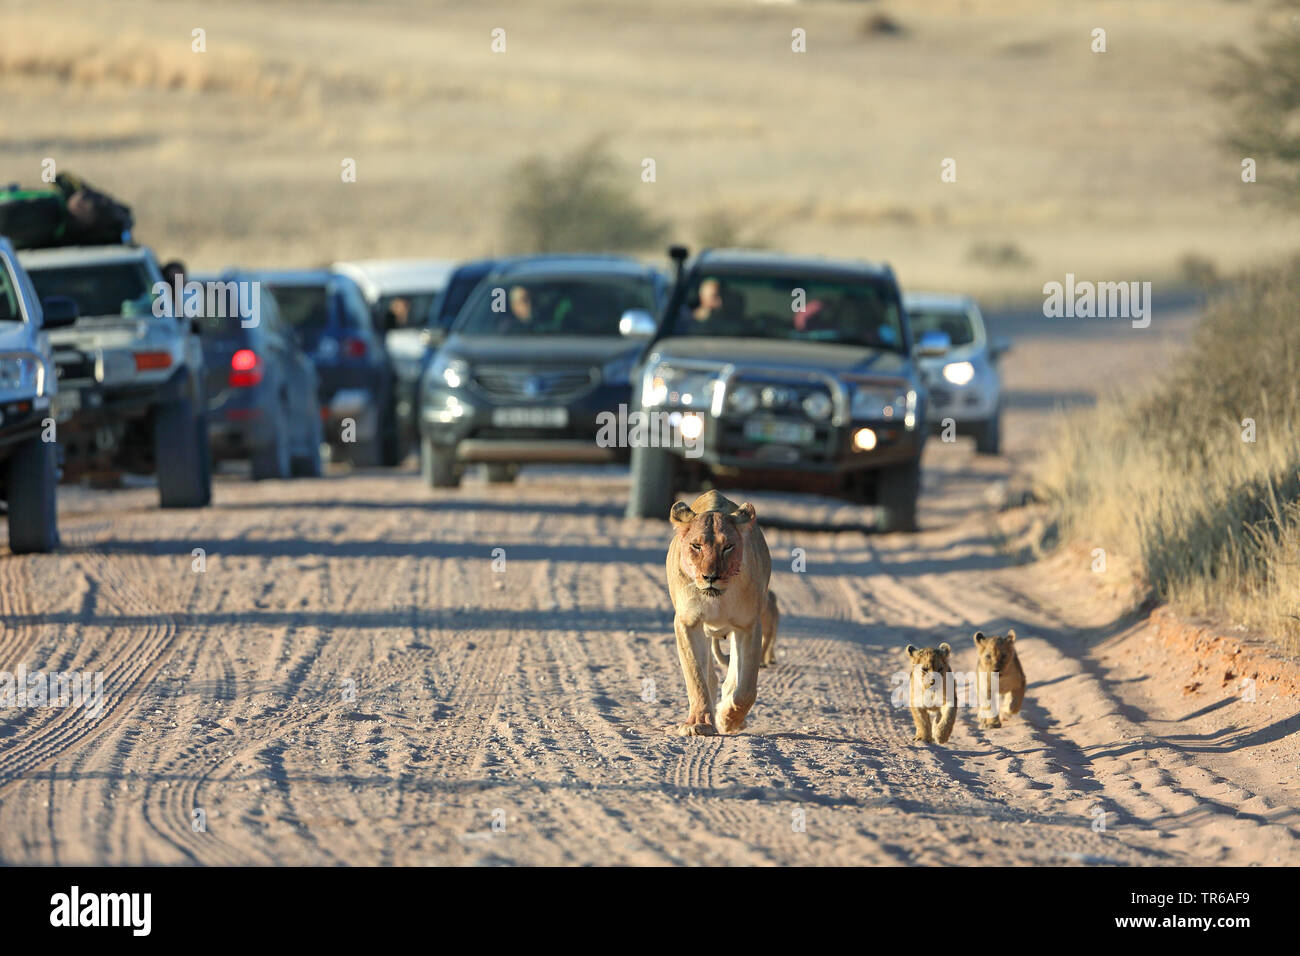 Lion (Panthera leo), leonessa a camminare con due giovani animali davanti a vetture su una pista di sabbia, vista frontale, Sud Africa, Kgalagadi transfrontaliera Parco Nazionale Foto Stock